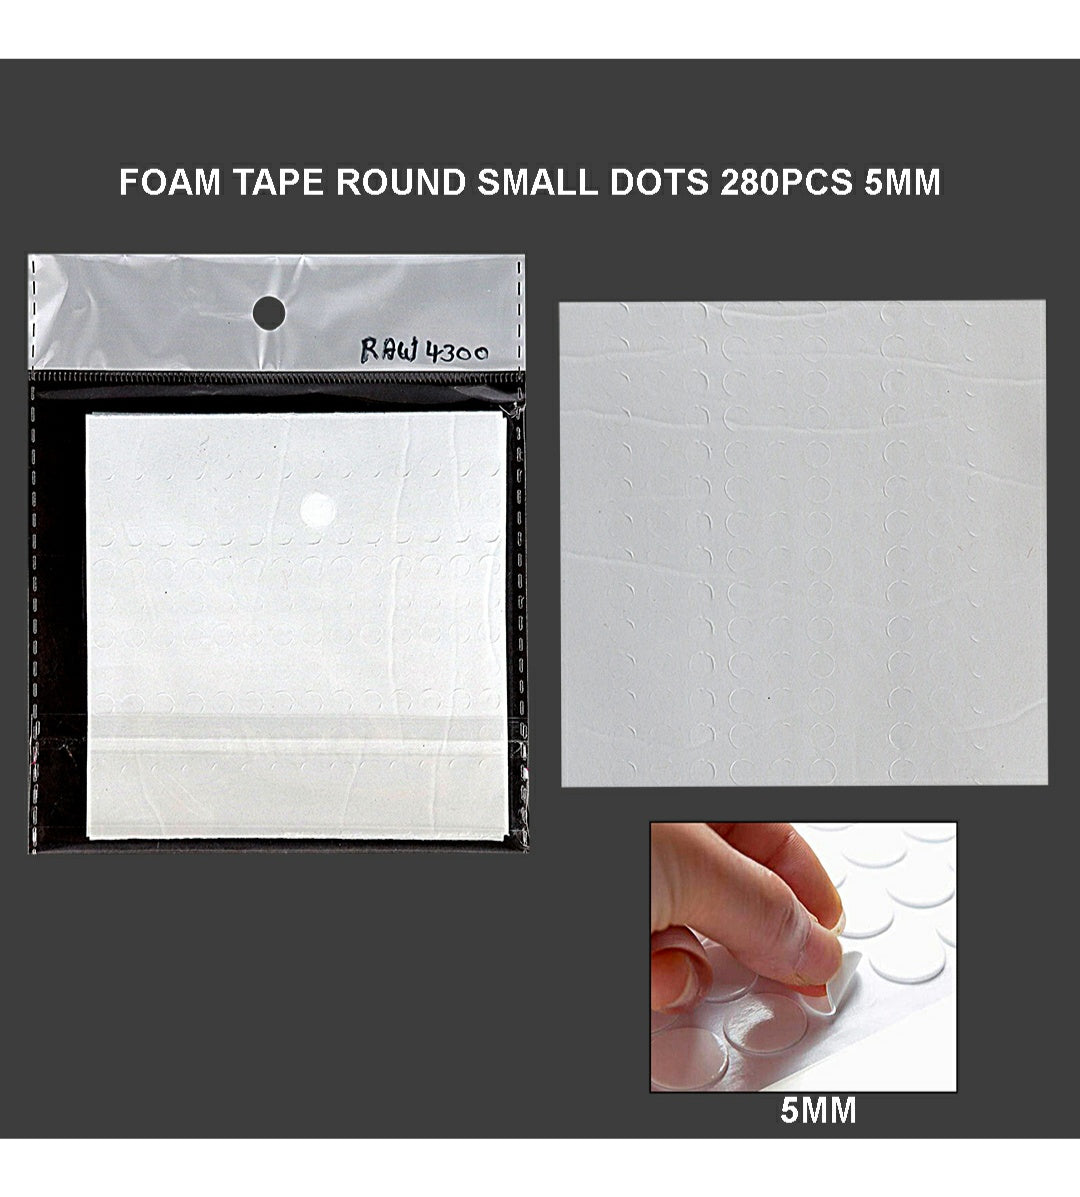 Foam Tape Round Dots 5Mm 280Pcs Small Raw4300 | INKARTO